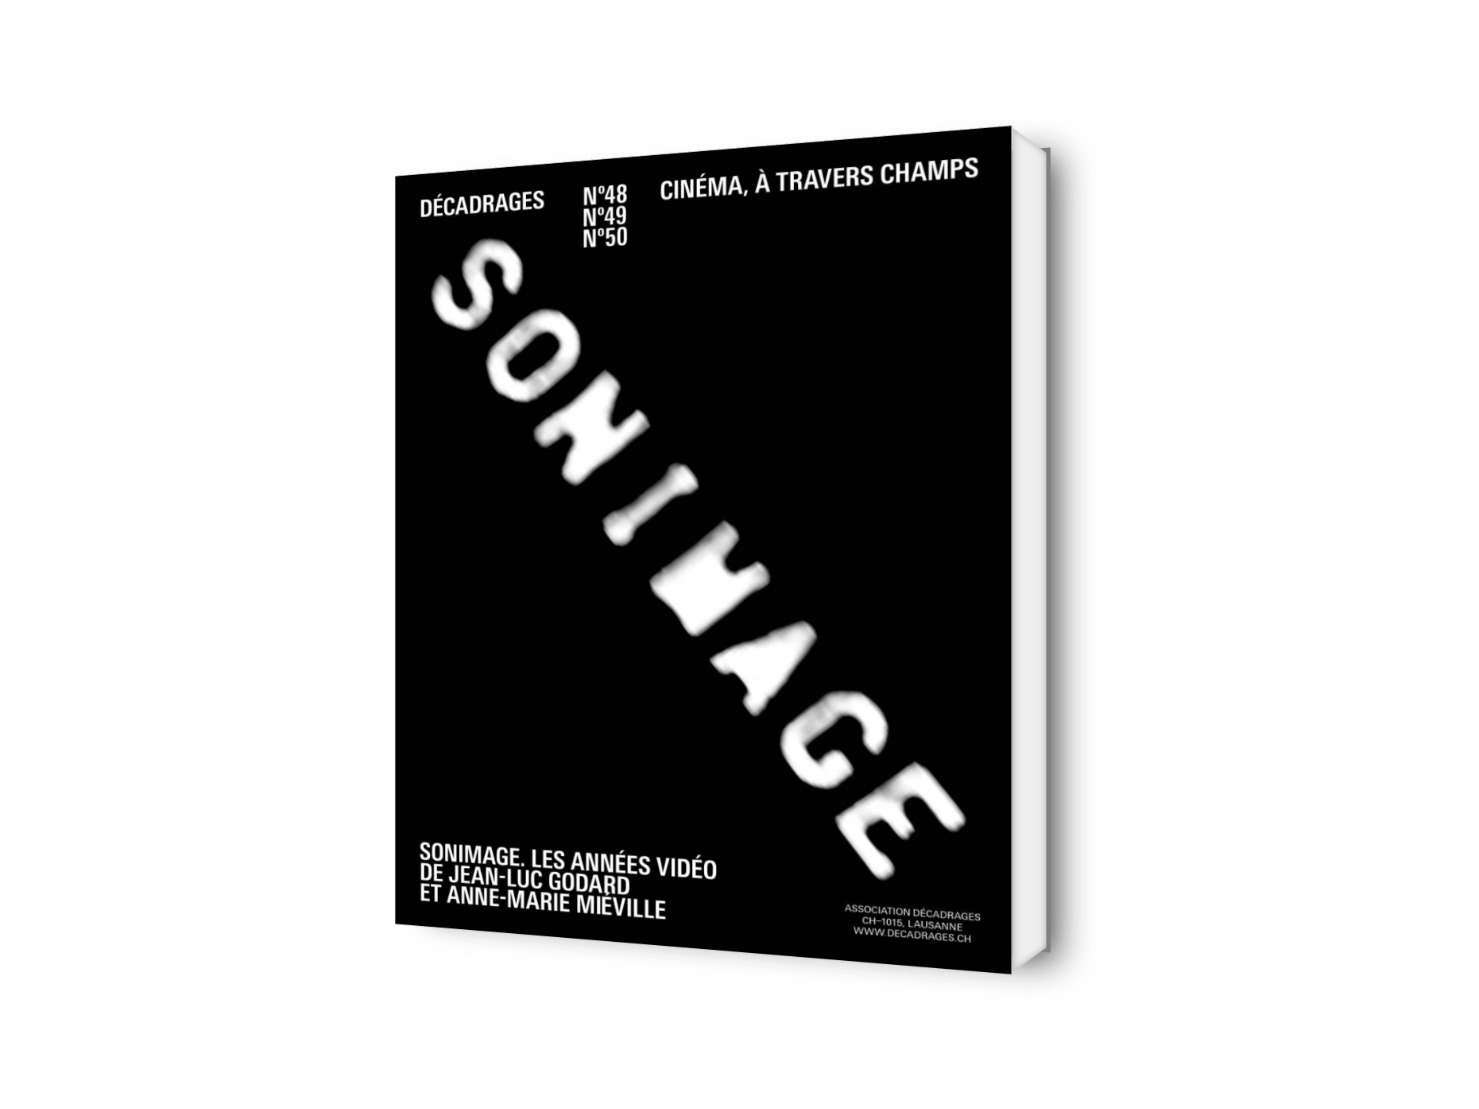 Sonimage. Les années vidéo de Jean-Luc Godard et Anne-Marie Miéville